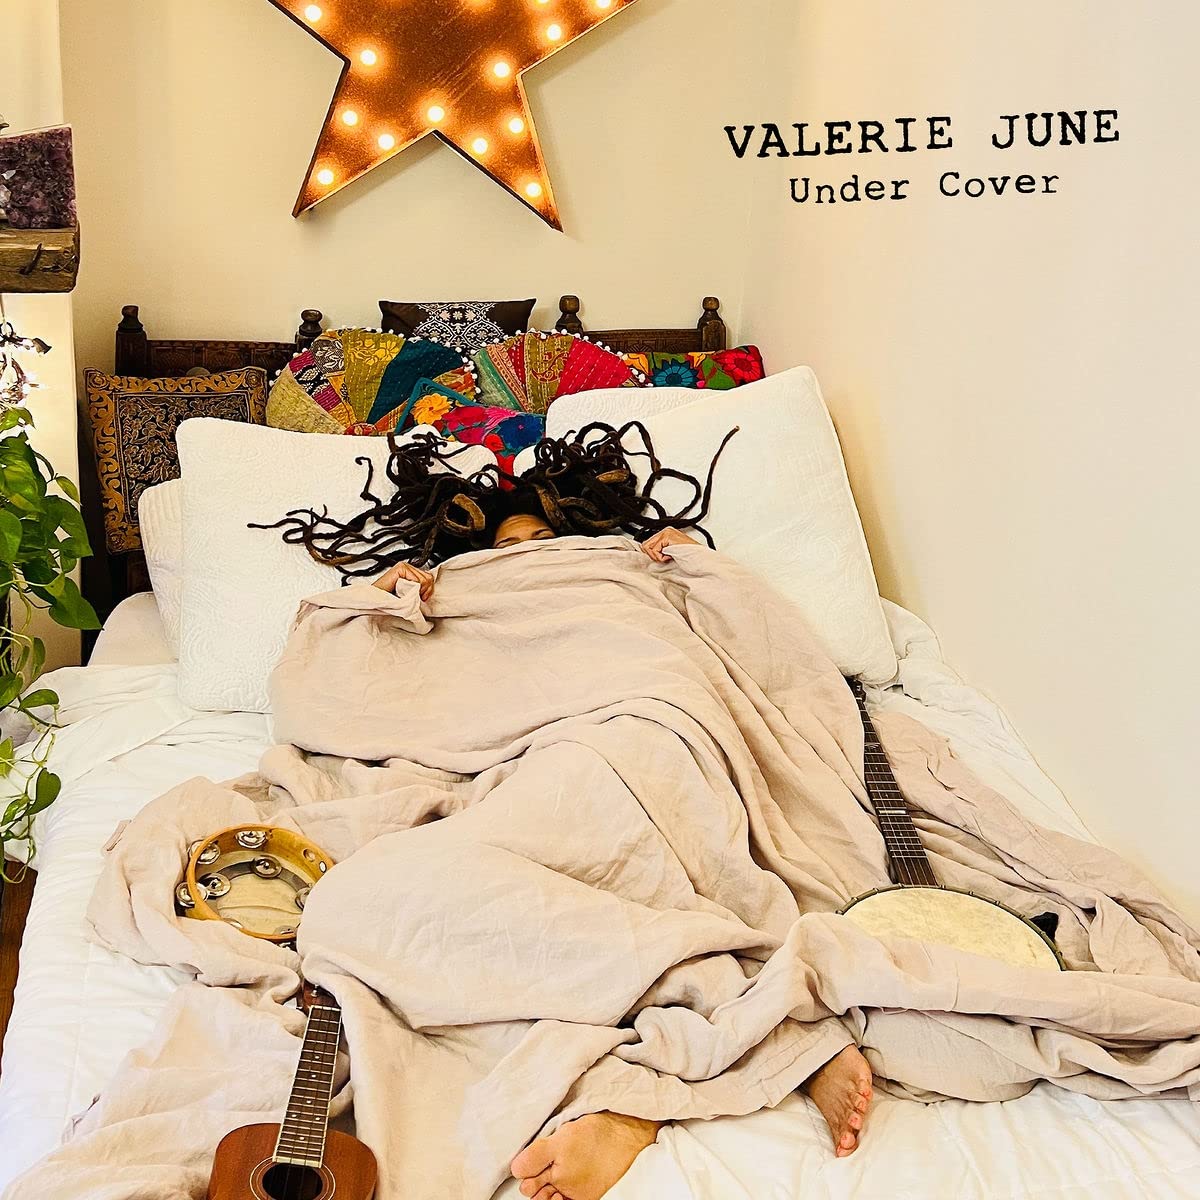 Valerie June - Under Cover LP (Blue Vinyl)